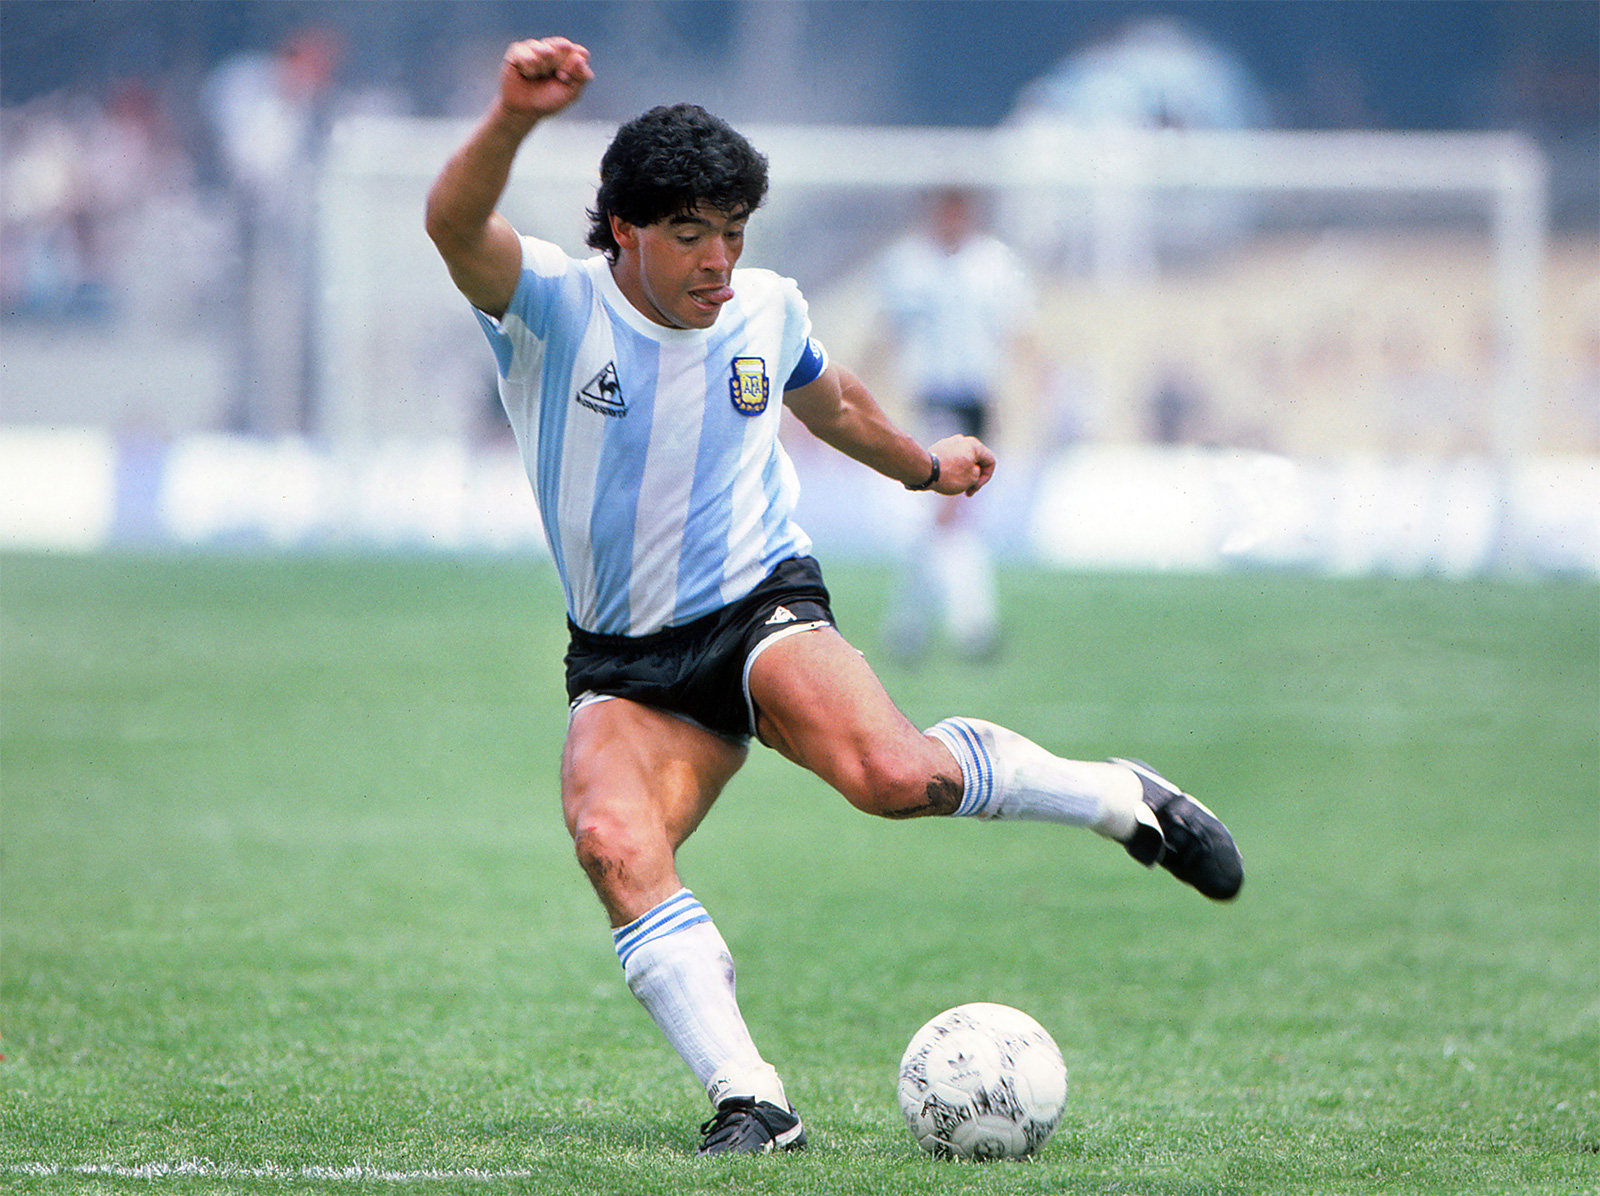 Diego Armando Maradona 1986